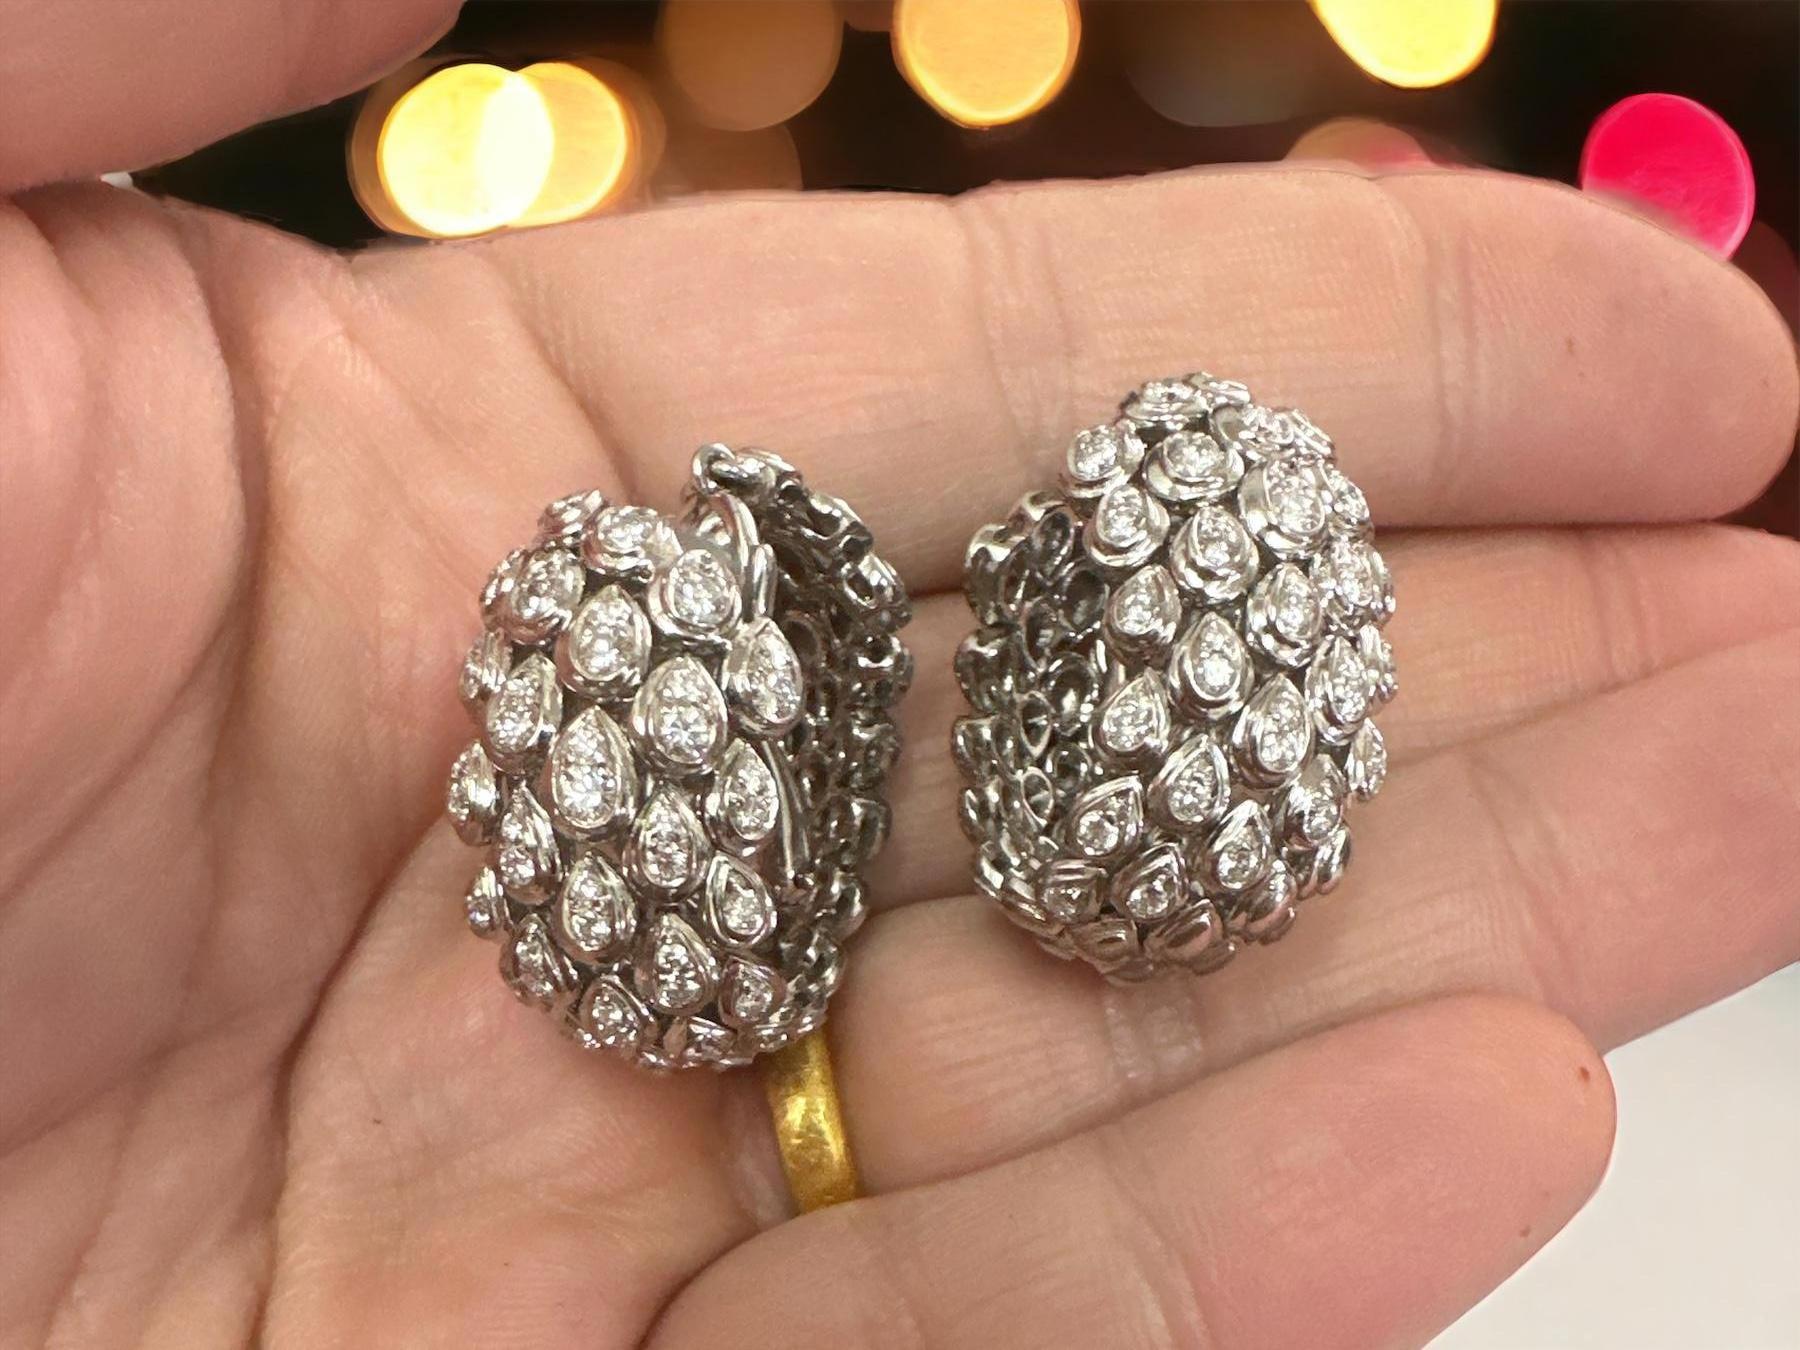 Une magnifique paire de boucles d'oreilles en or blanc 18kt Faraone Italy avec des diamants. Ces boucles d'oreilles représentent un beau mélange d'artisanat italien et de luxe, et elles ne manqueront pas d'être un ajout captivant à toute collection